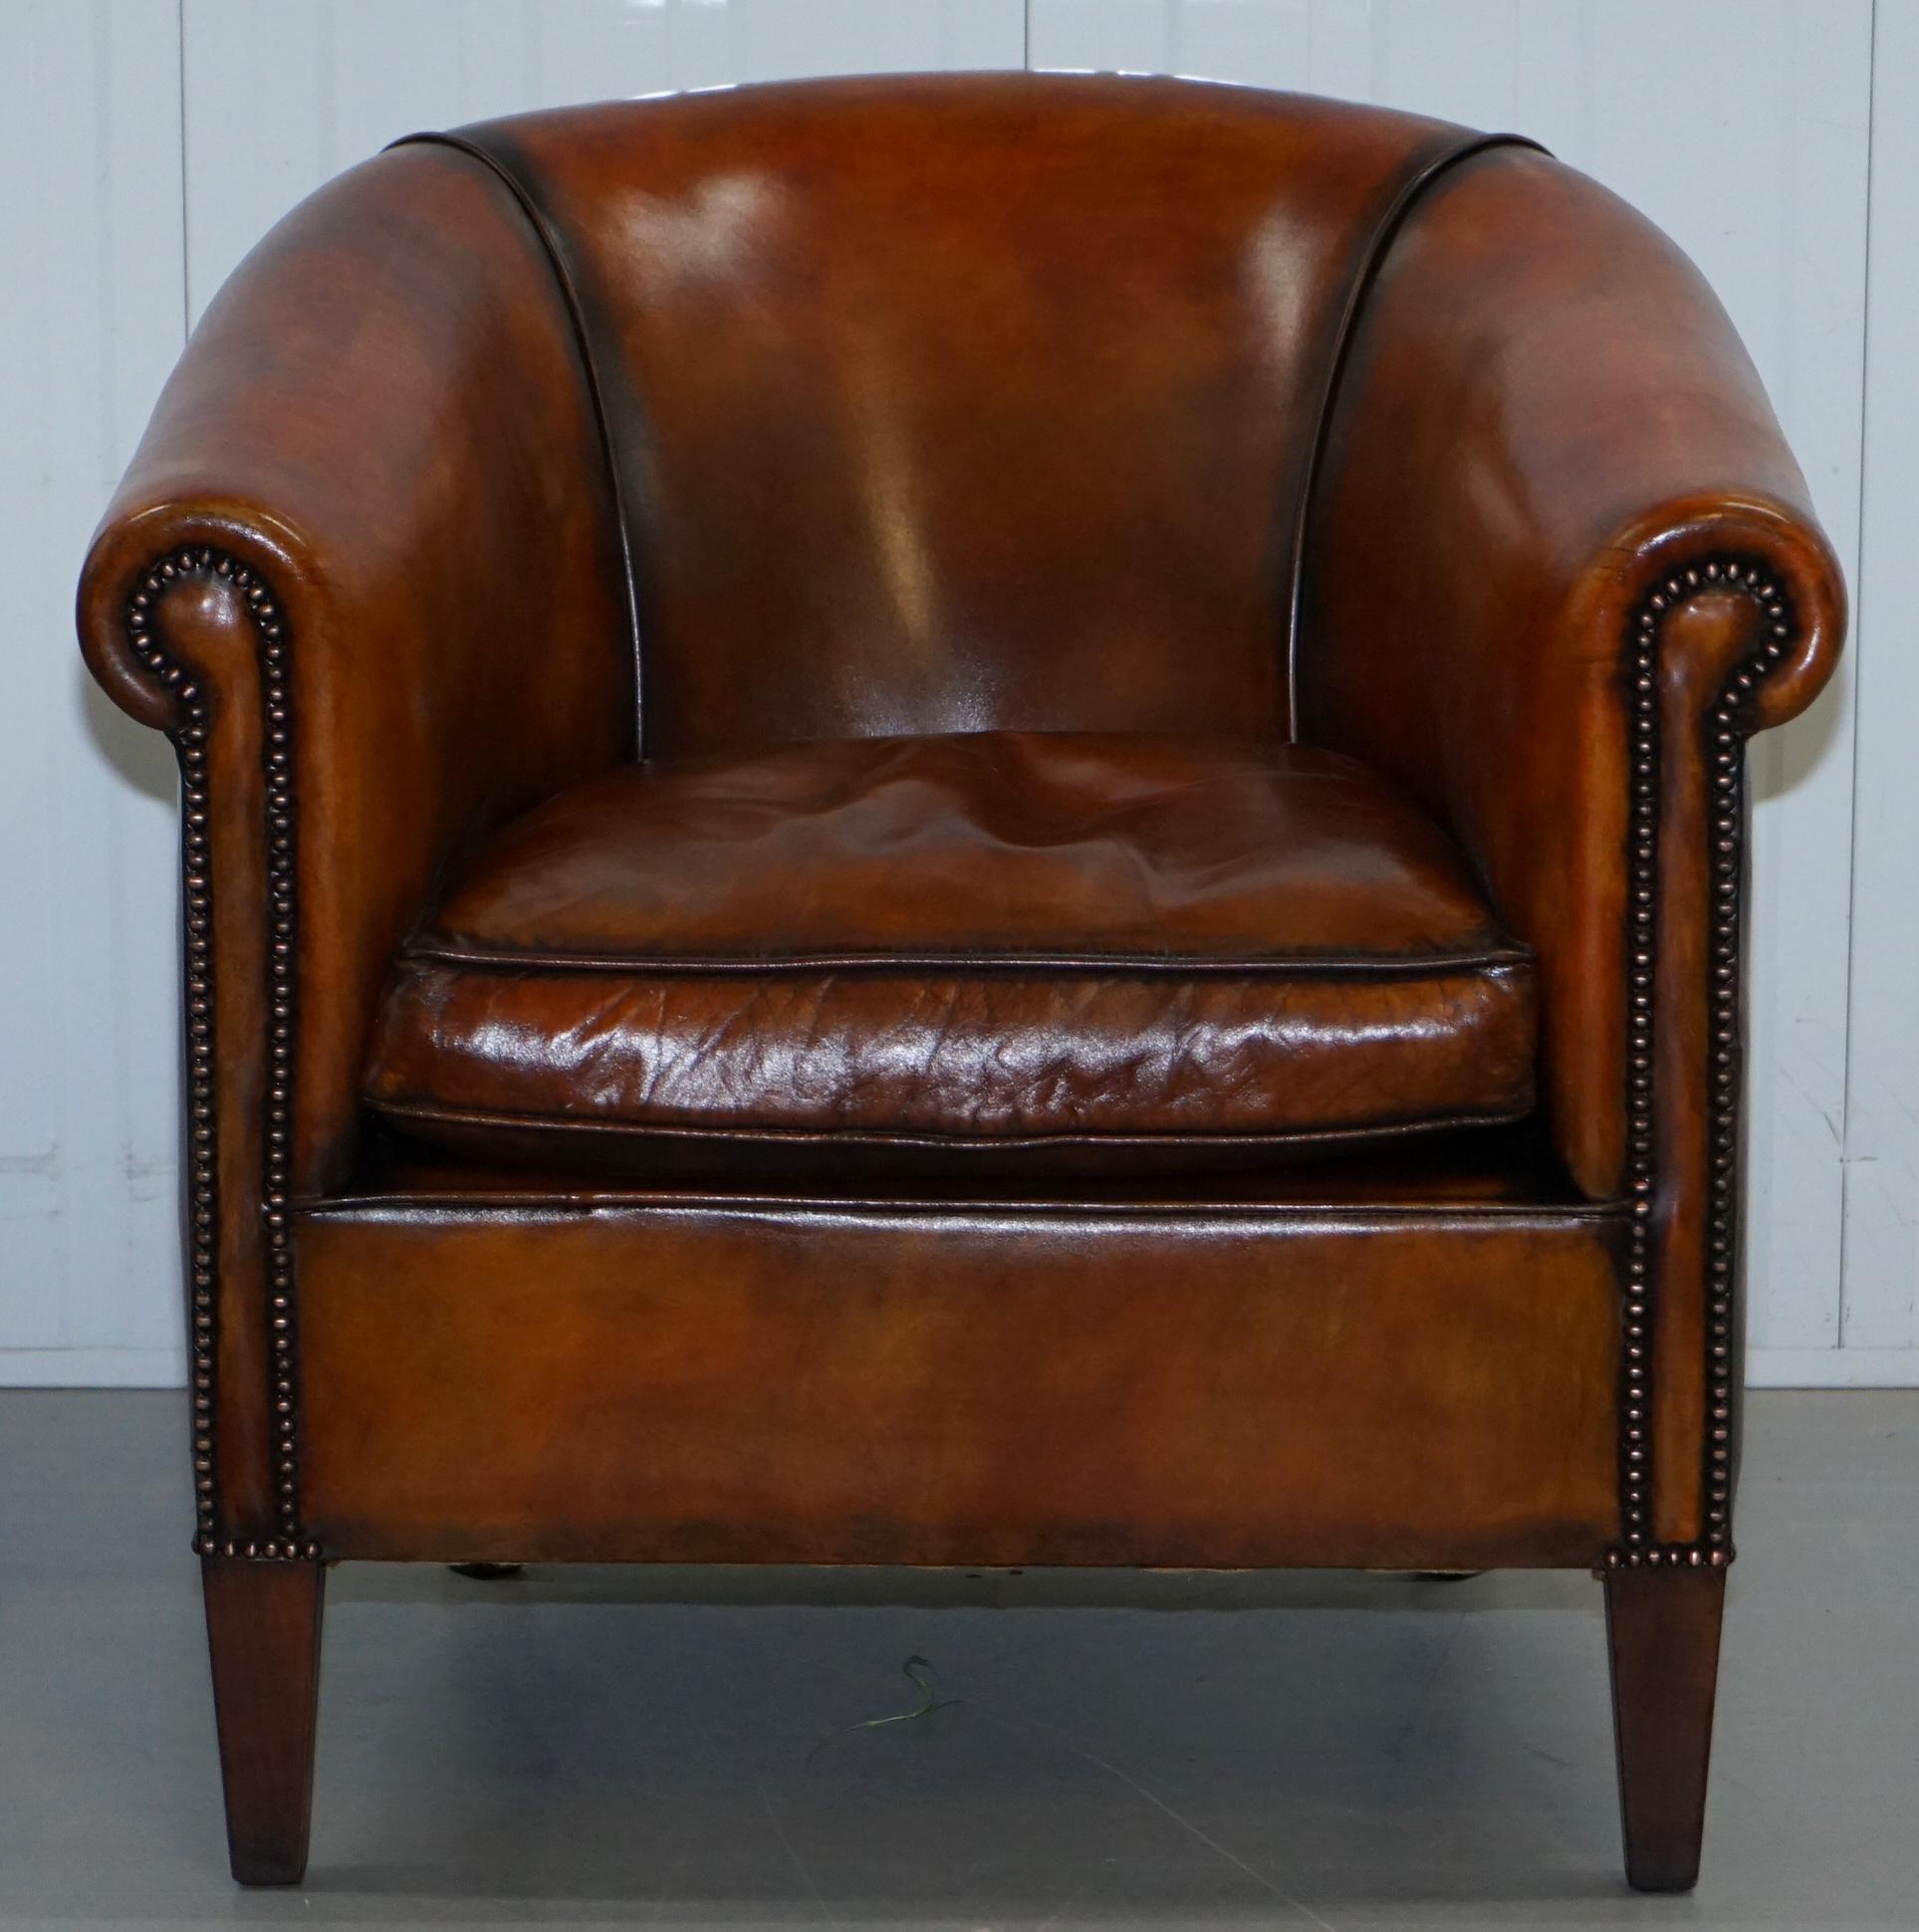 Wir freuen uns:: zum Verkauf dieser super coolen voll restauriert James Bond 007 Lederstühle von Bath Amersham Sessel

In besser als der ursprüngliche Zustand als unsere Leder Polierer haben den Stuhl zurück auf die natürliche Haut gestrippt:: seine